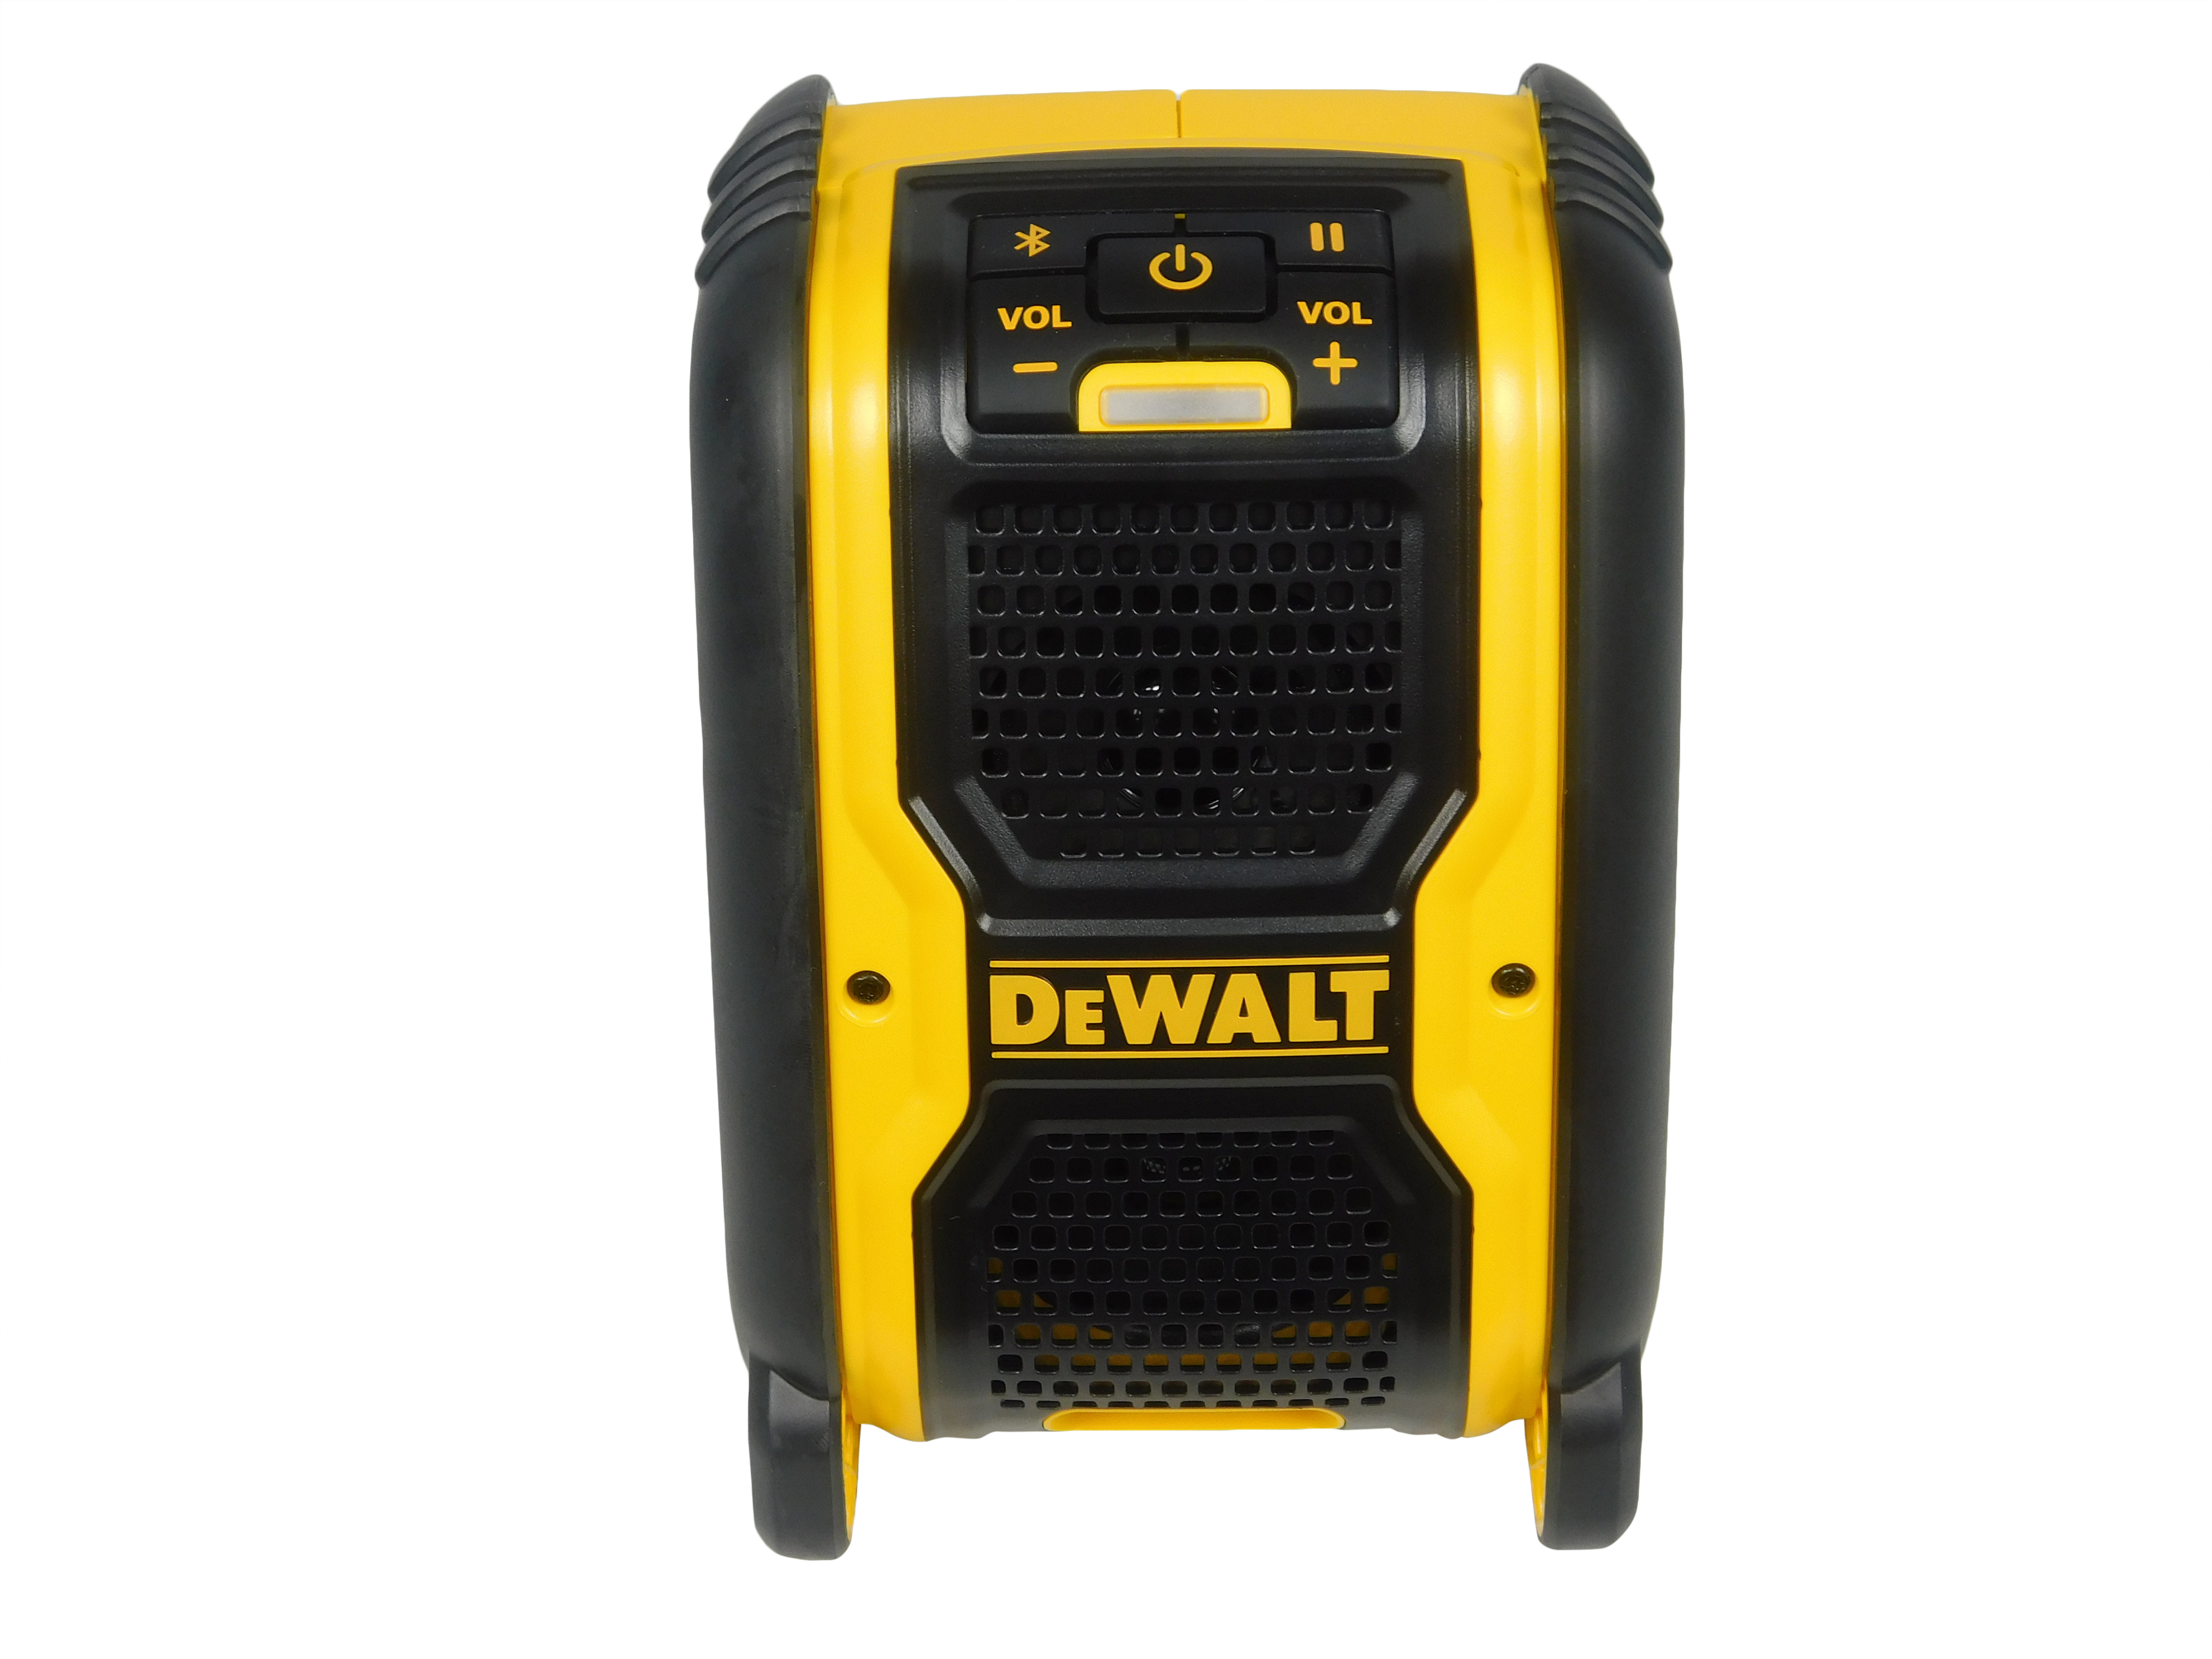 Dewalt dcr006 bluetooth speaker user manual download